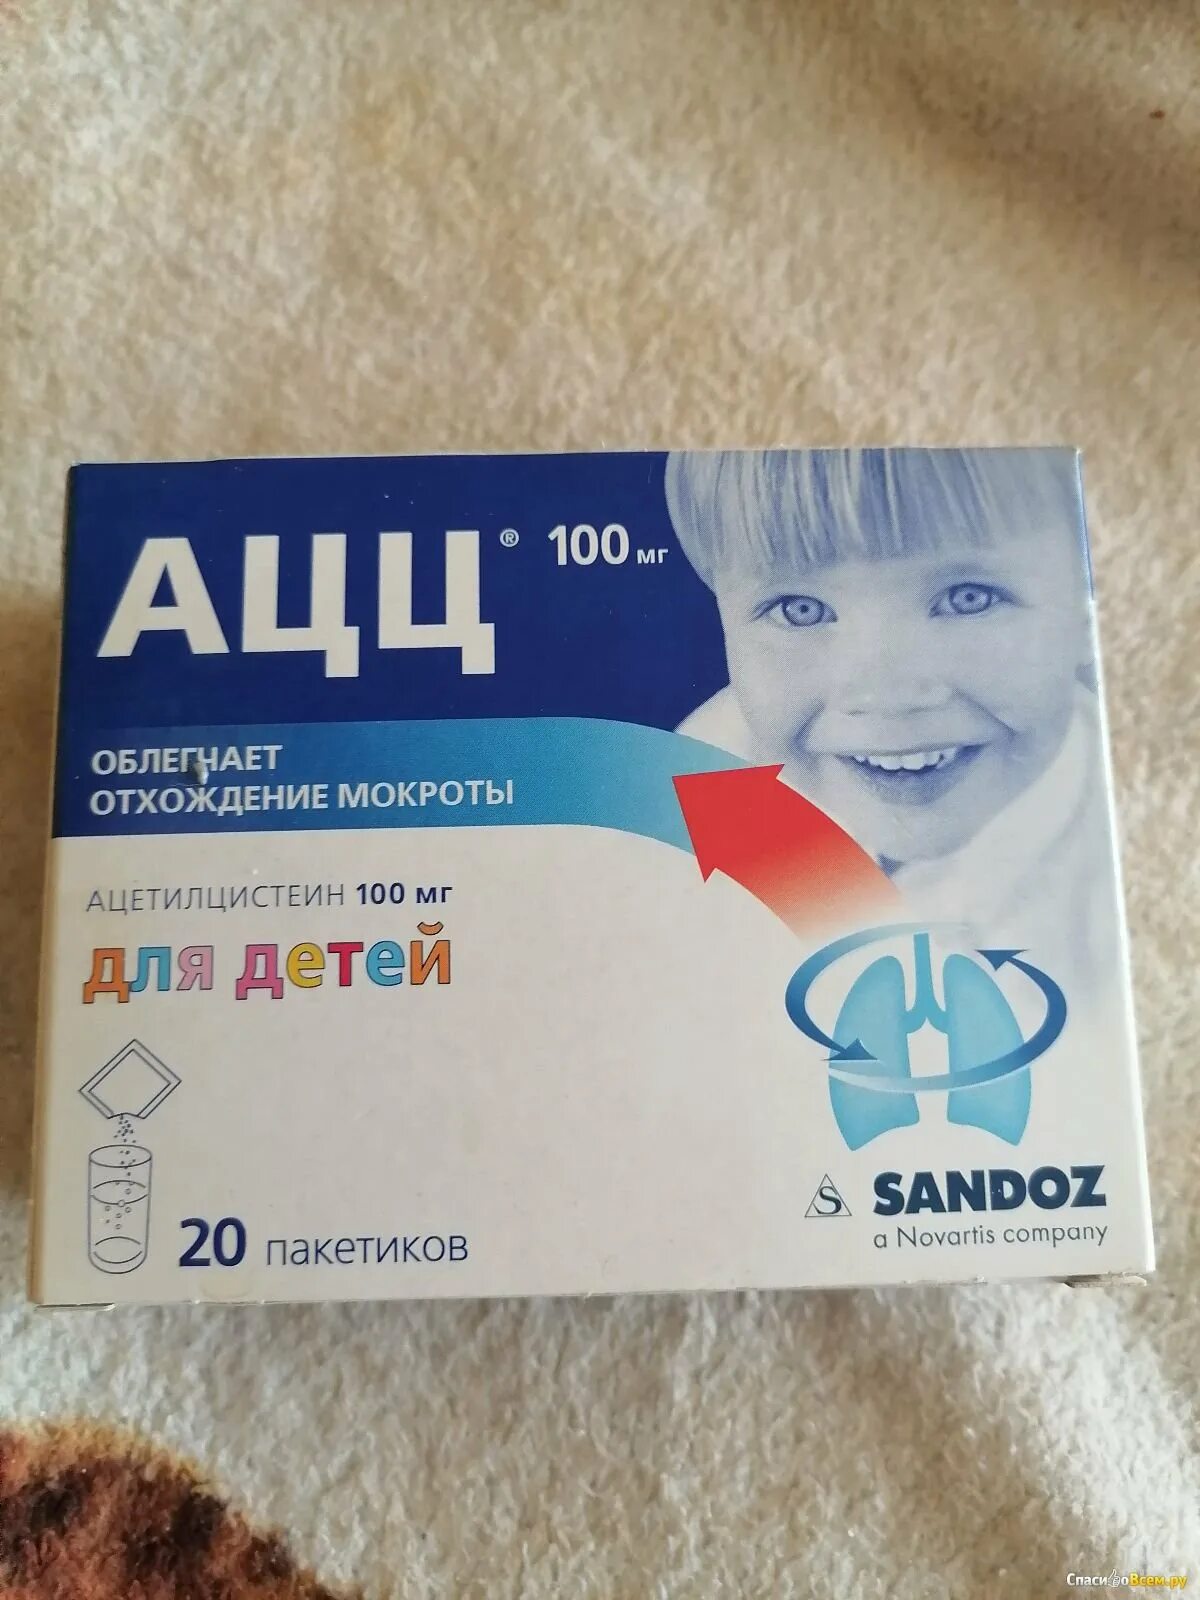 Пить ли ацц при сухом кашле. Лекарство для отхождения мокроты у детей. Детские таблетки для отхождения мокроты. Для отхождения мокроты у детей в таблетках. Ацц для детей таблетки.